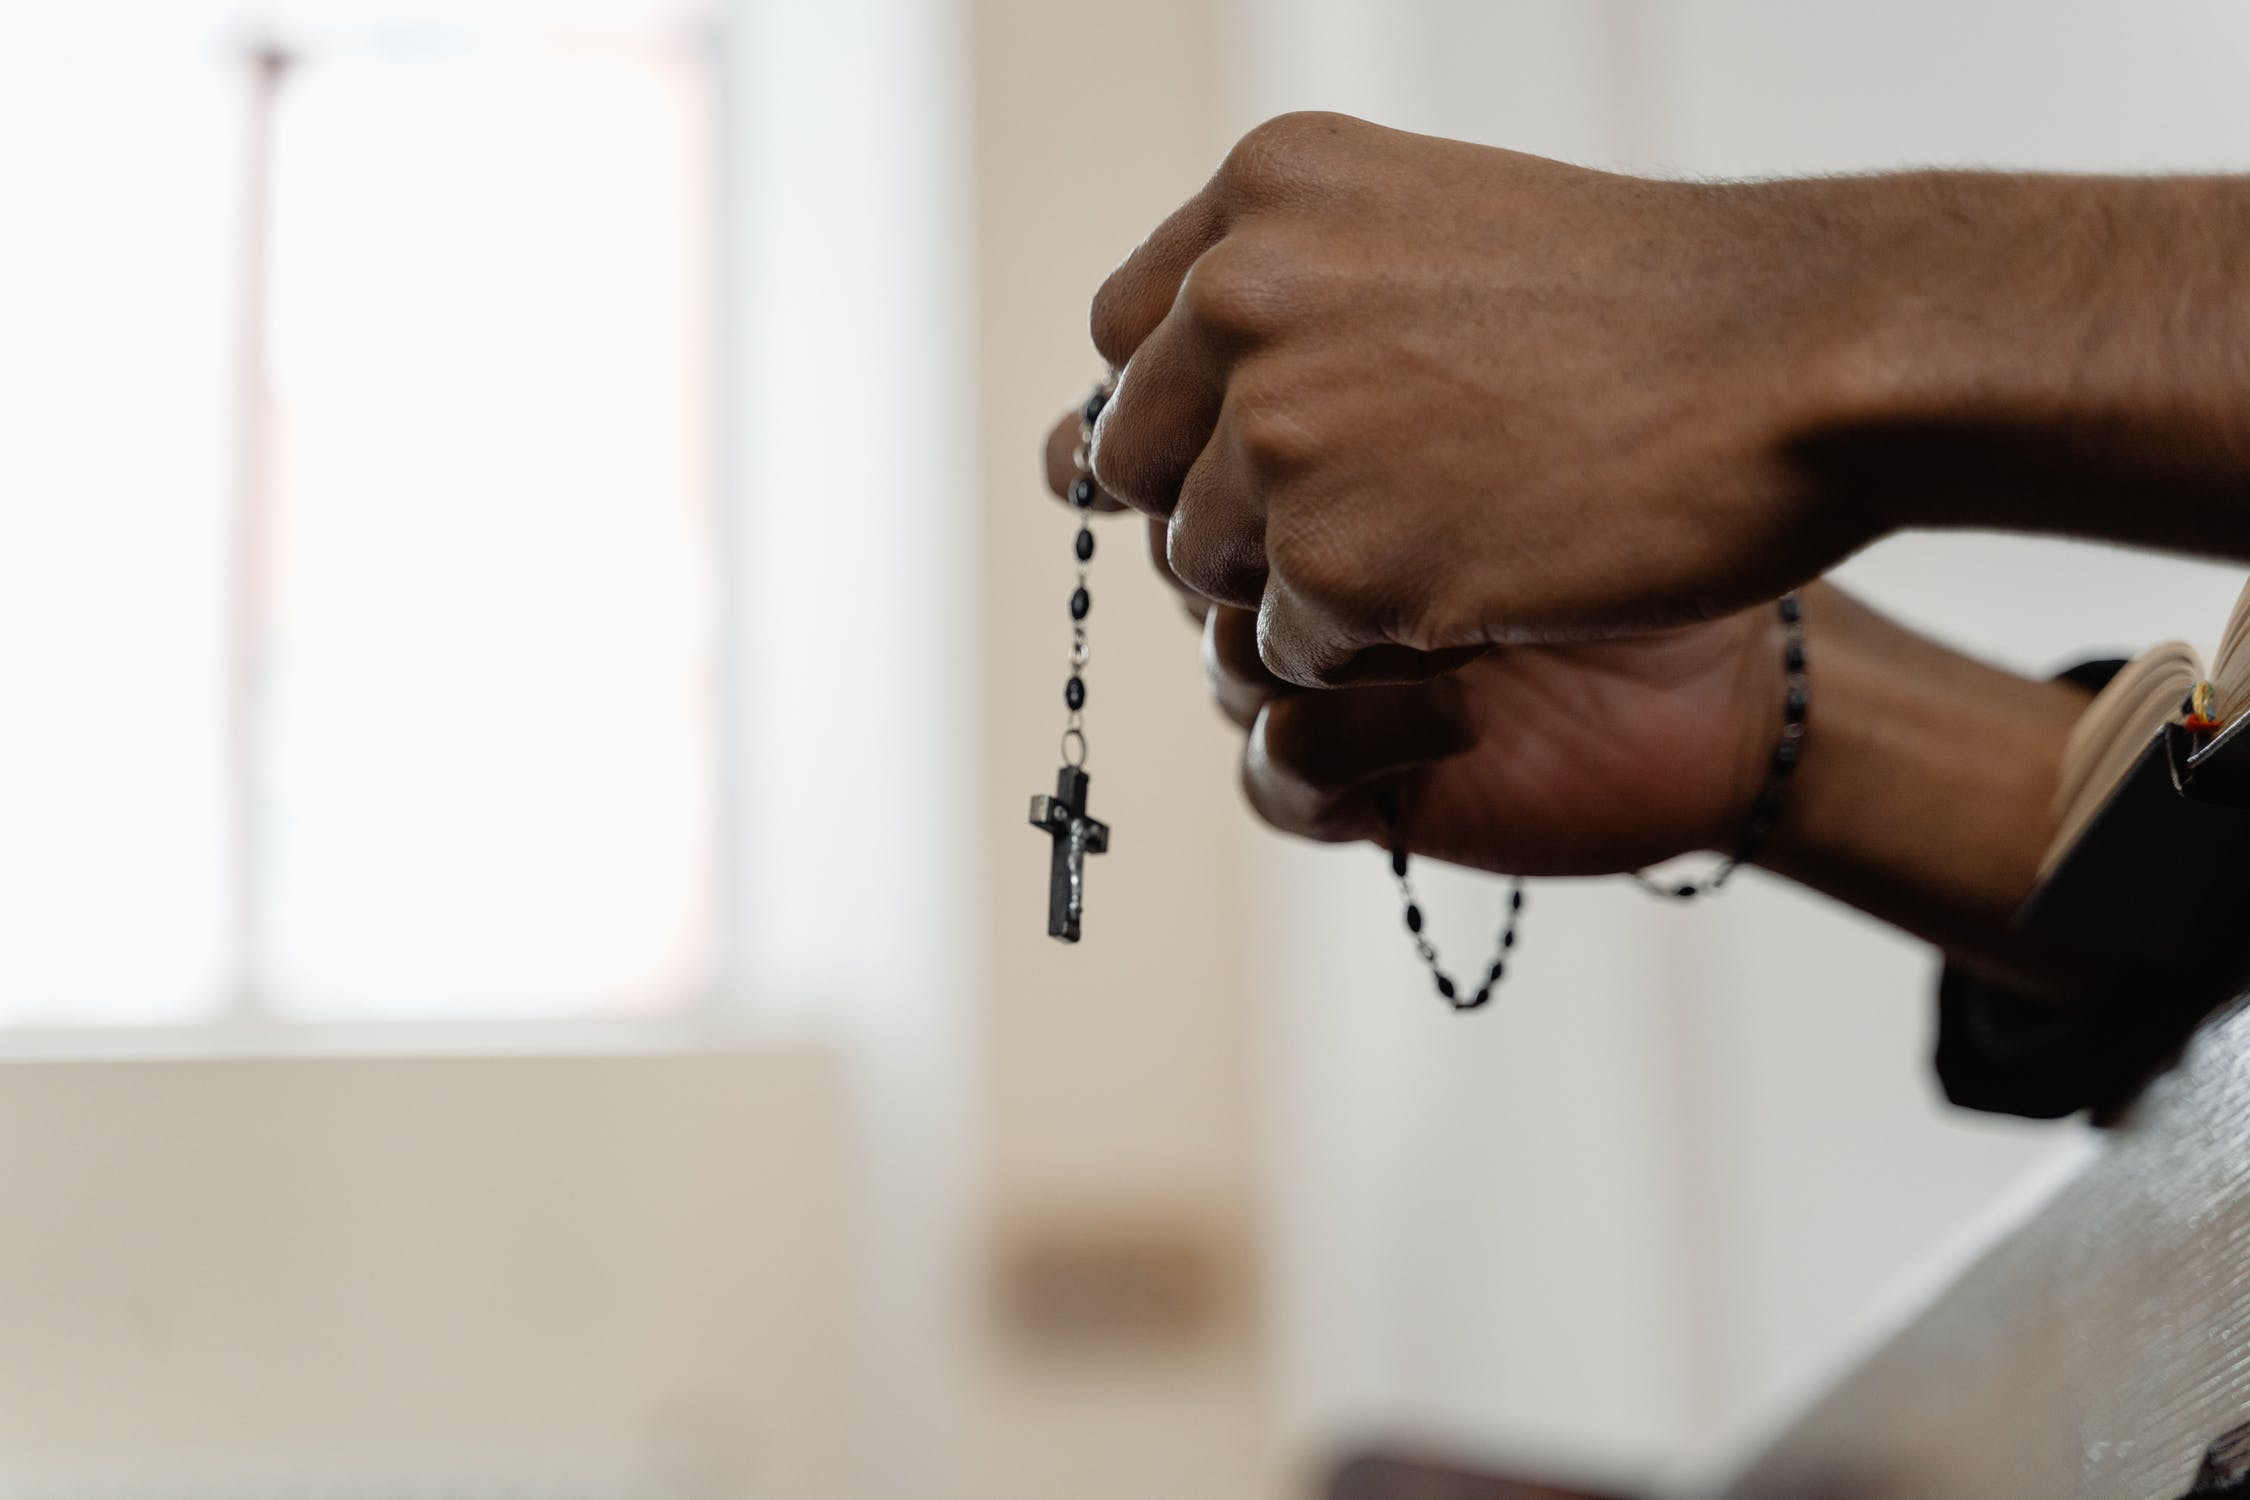 Ιερέας βίαζε έφηβη για να την «θεραπεύσει» από την ομοφυλοφιλία: «Είναι εντάξει από τον Θεό»